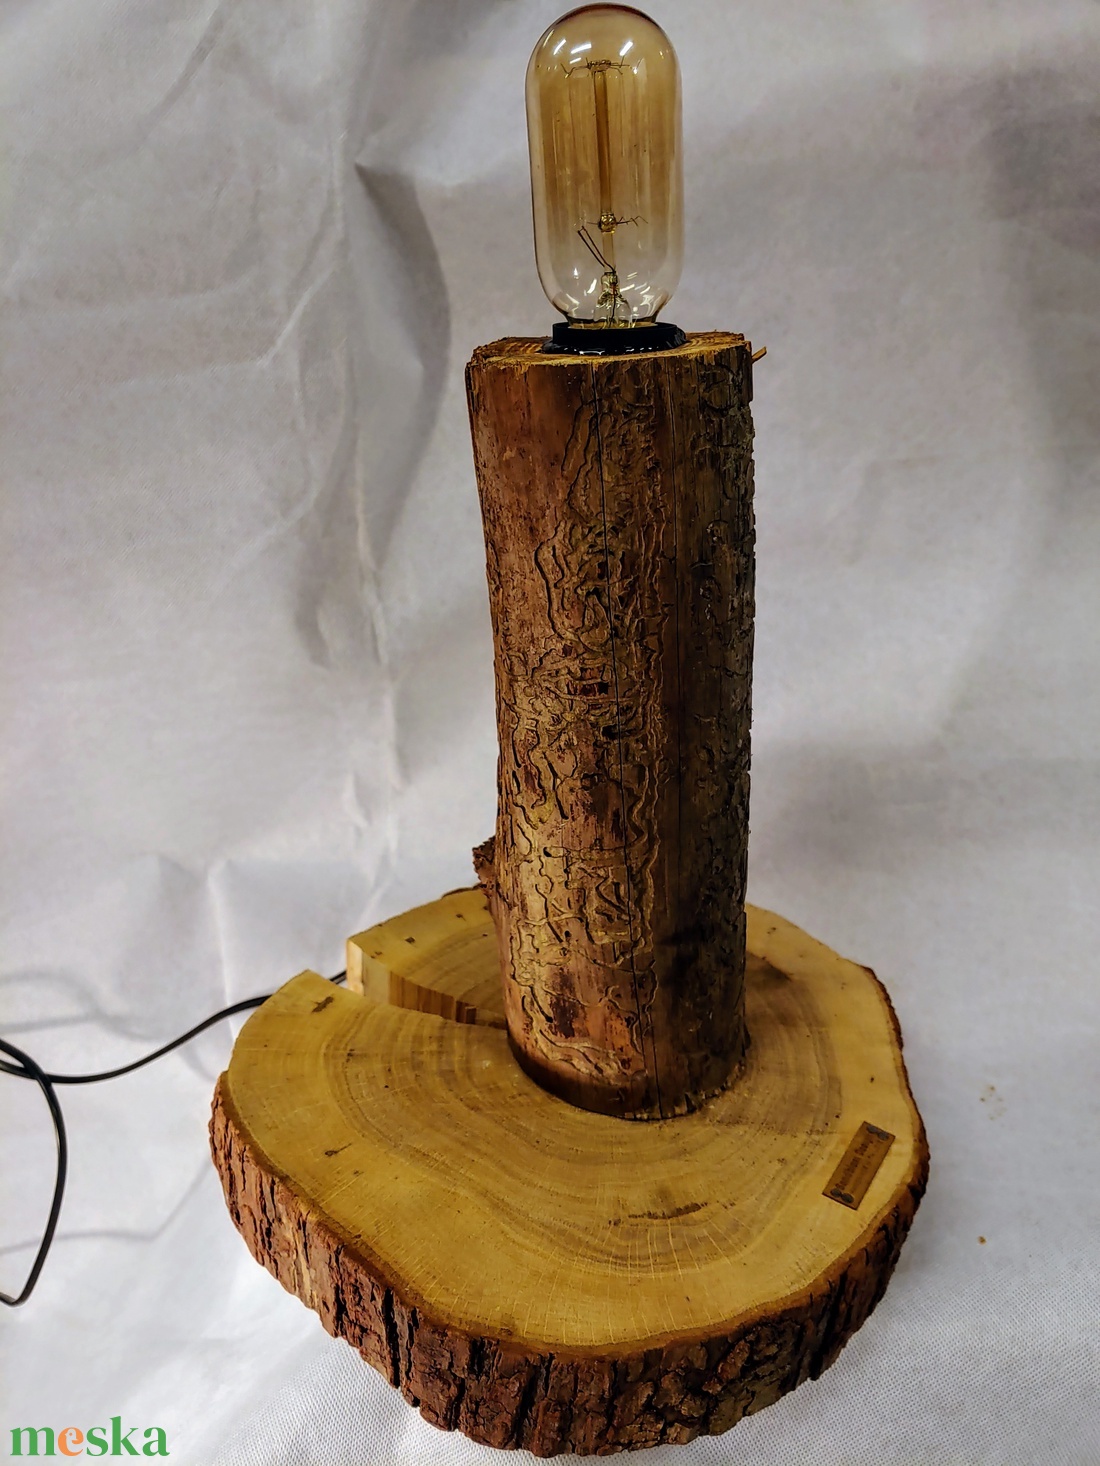 Fa lámpa - A természet ihlette fényforrás - - otthon & lakás - lámpa - hangulatlámpa - Meska.hu